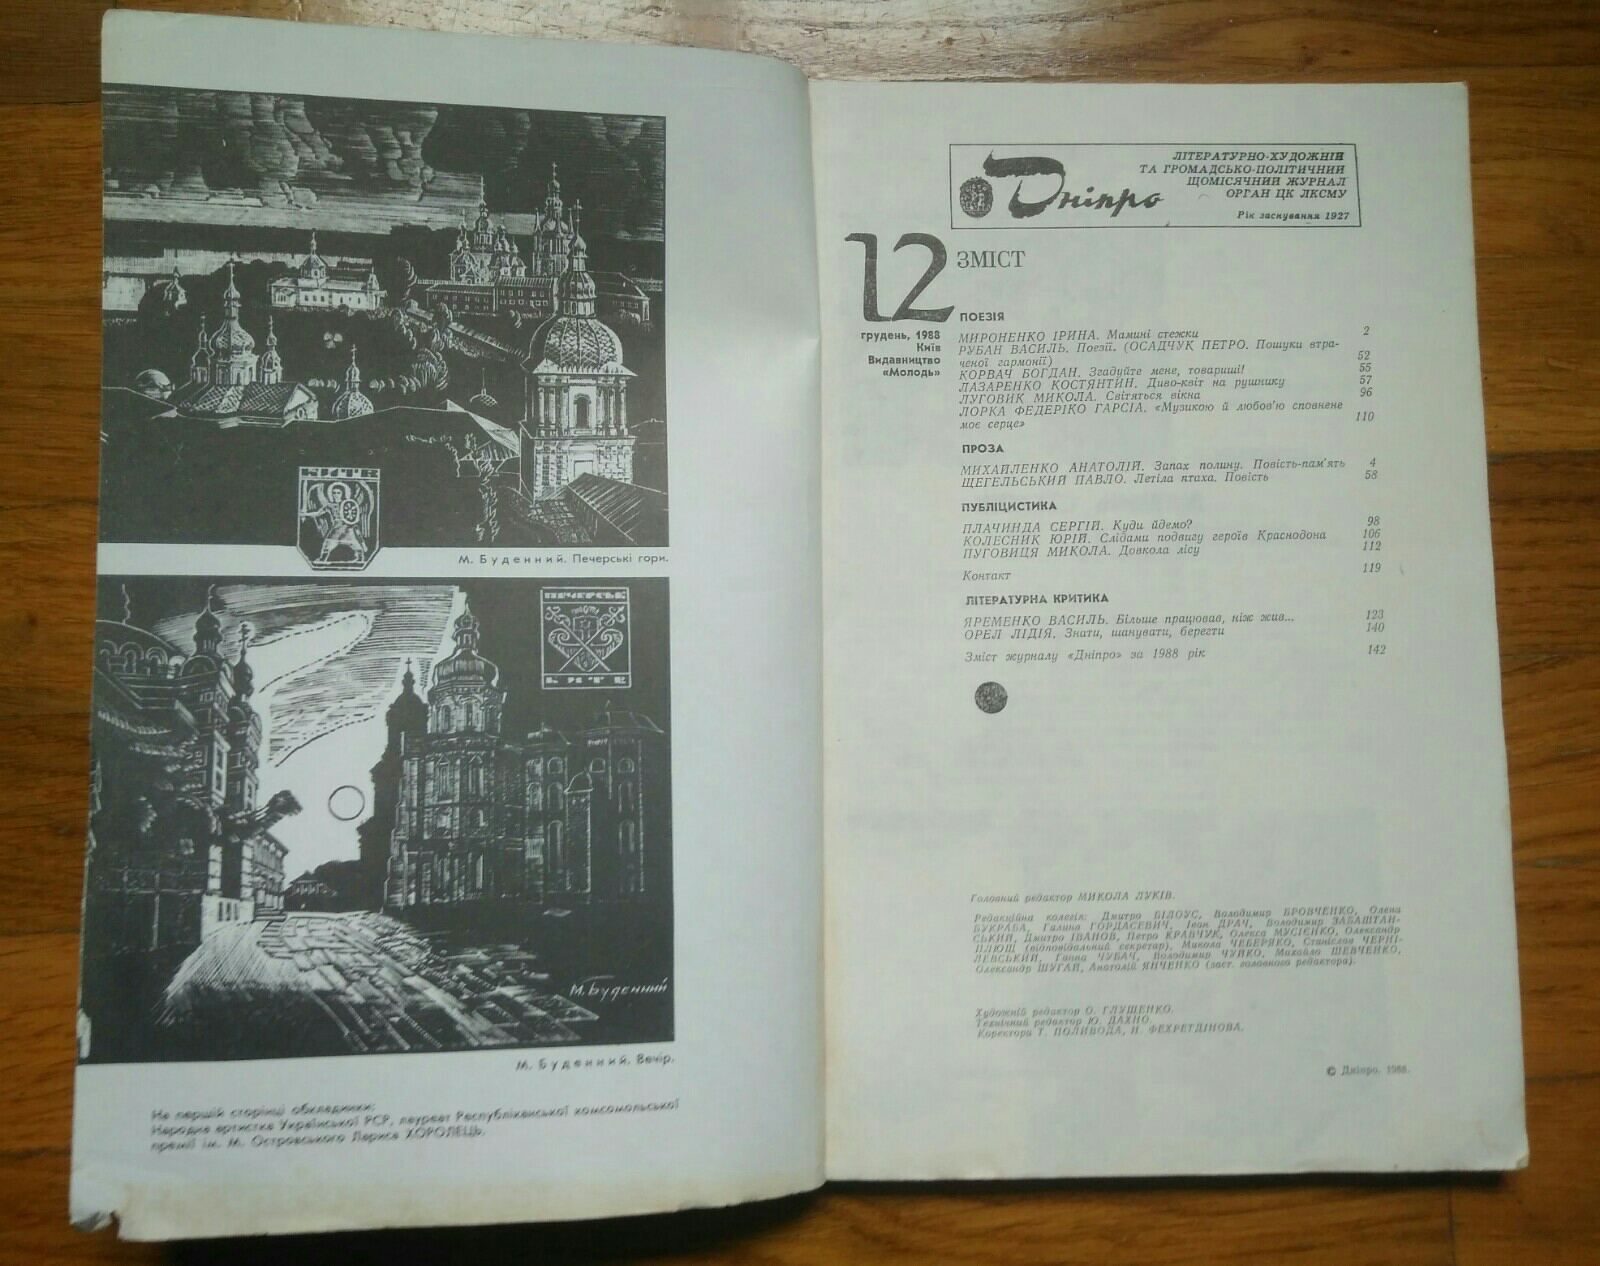 Літературно-художній
журнал "Дніпро"
1988 р. - 12 випусків
1989 р. - 1